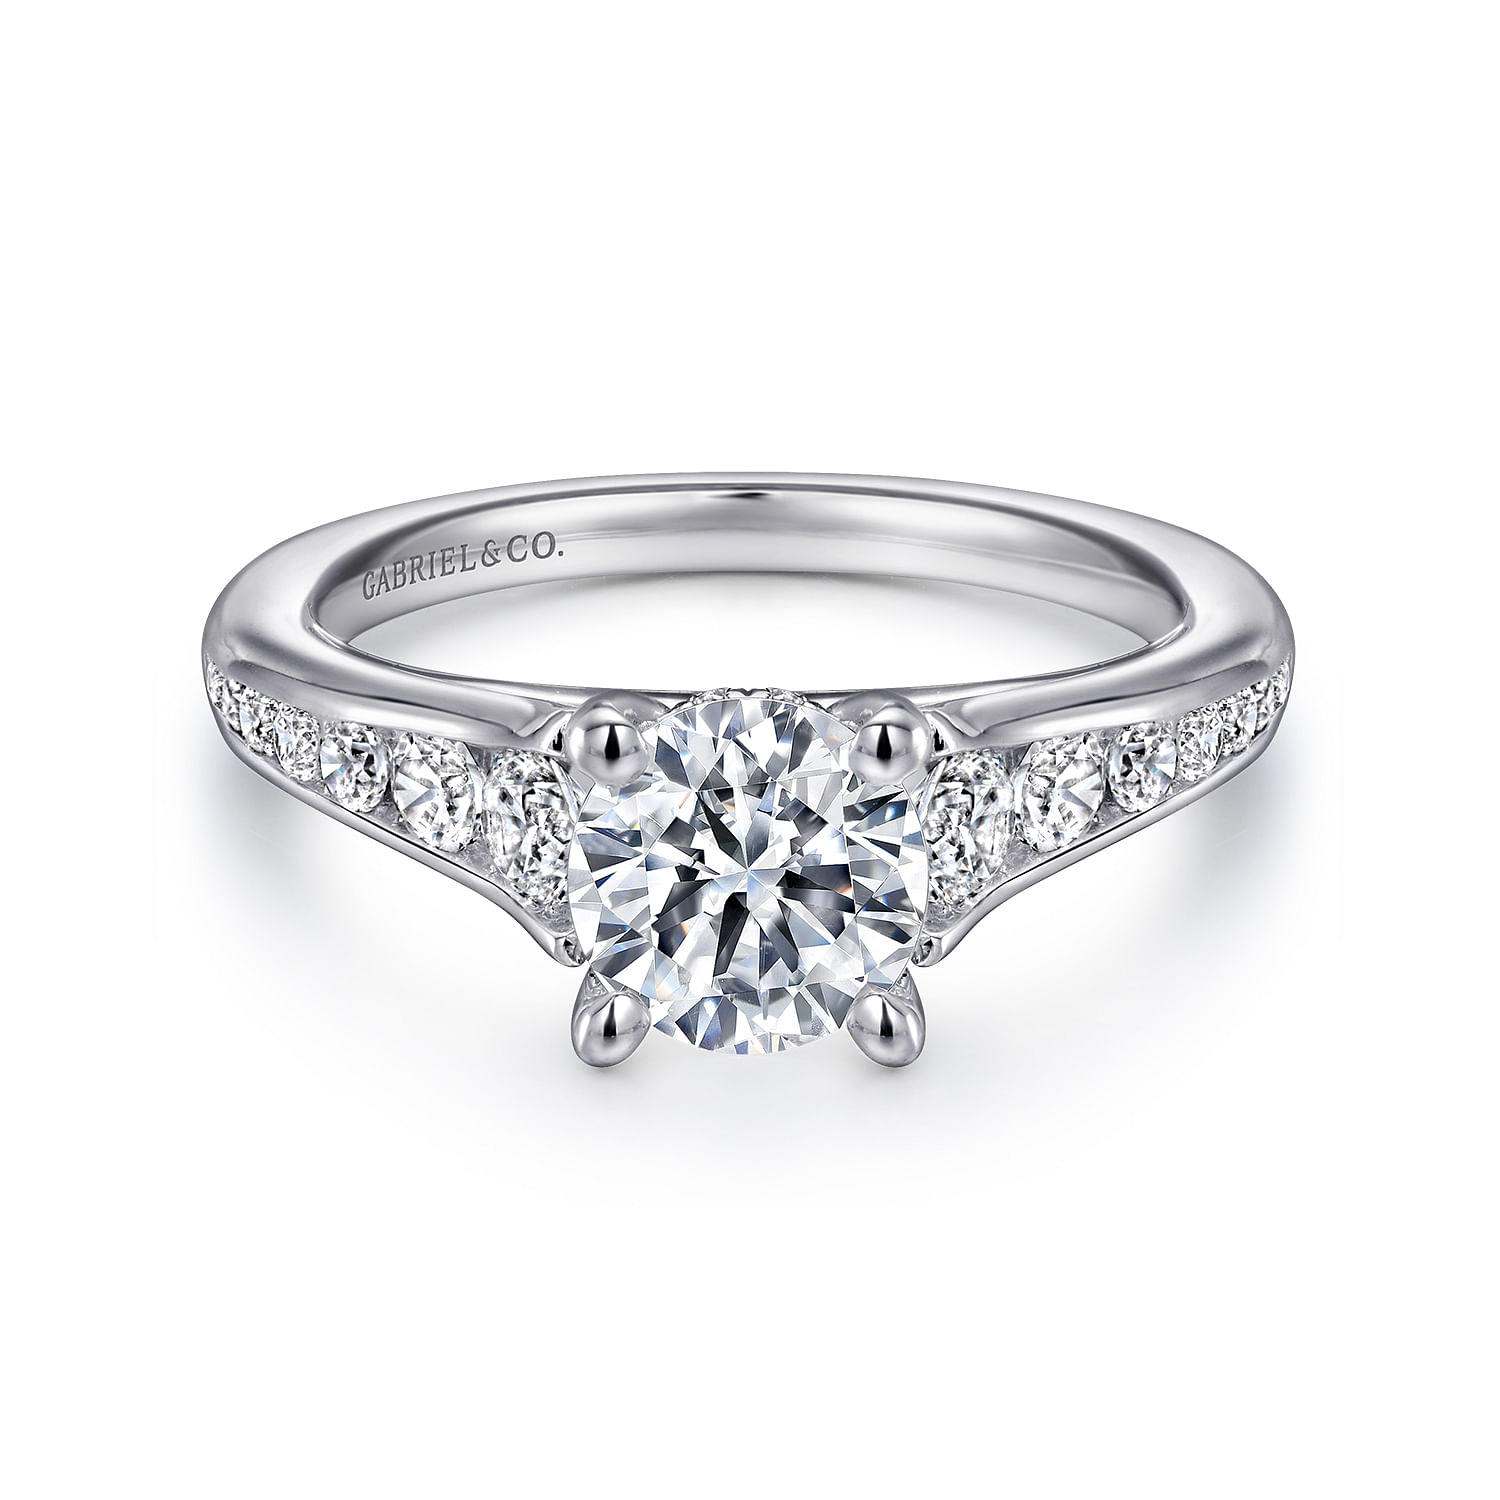 Aubrey---14K-White-Gold-Round-Diamond-Channel-Set-Engagement-Ring1